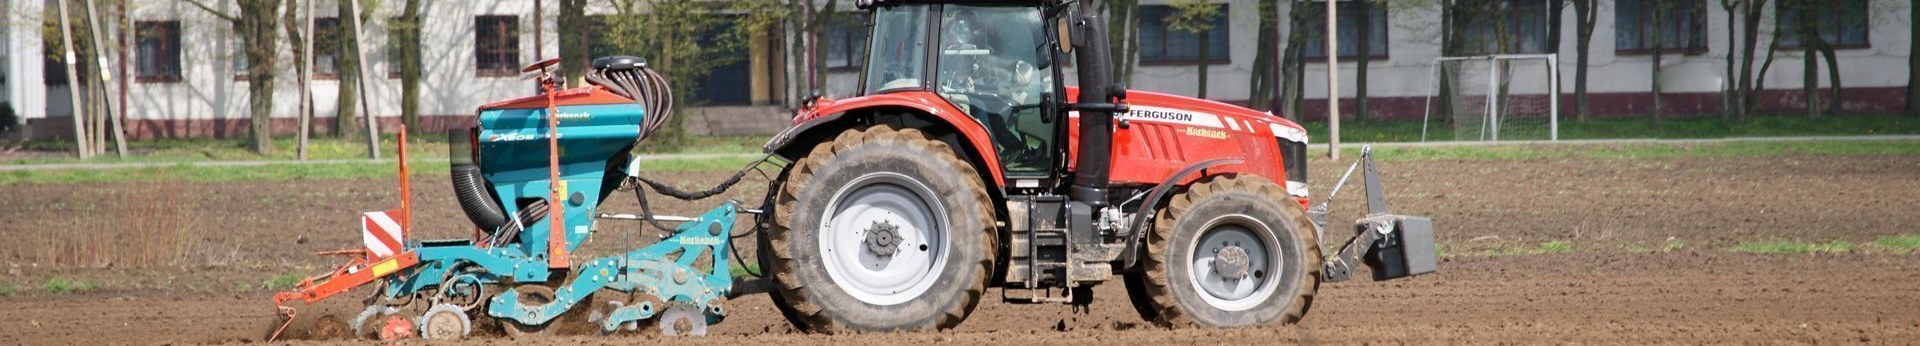 Maszyny rolnicze Sulky, agregat uprawowo-siewny Sulky z ciągnikiem Massey Ferguson